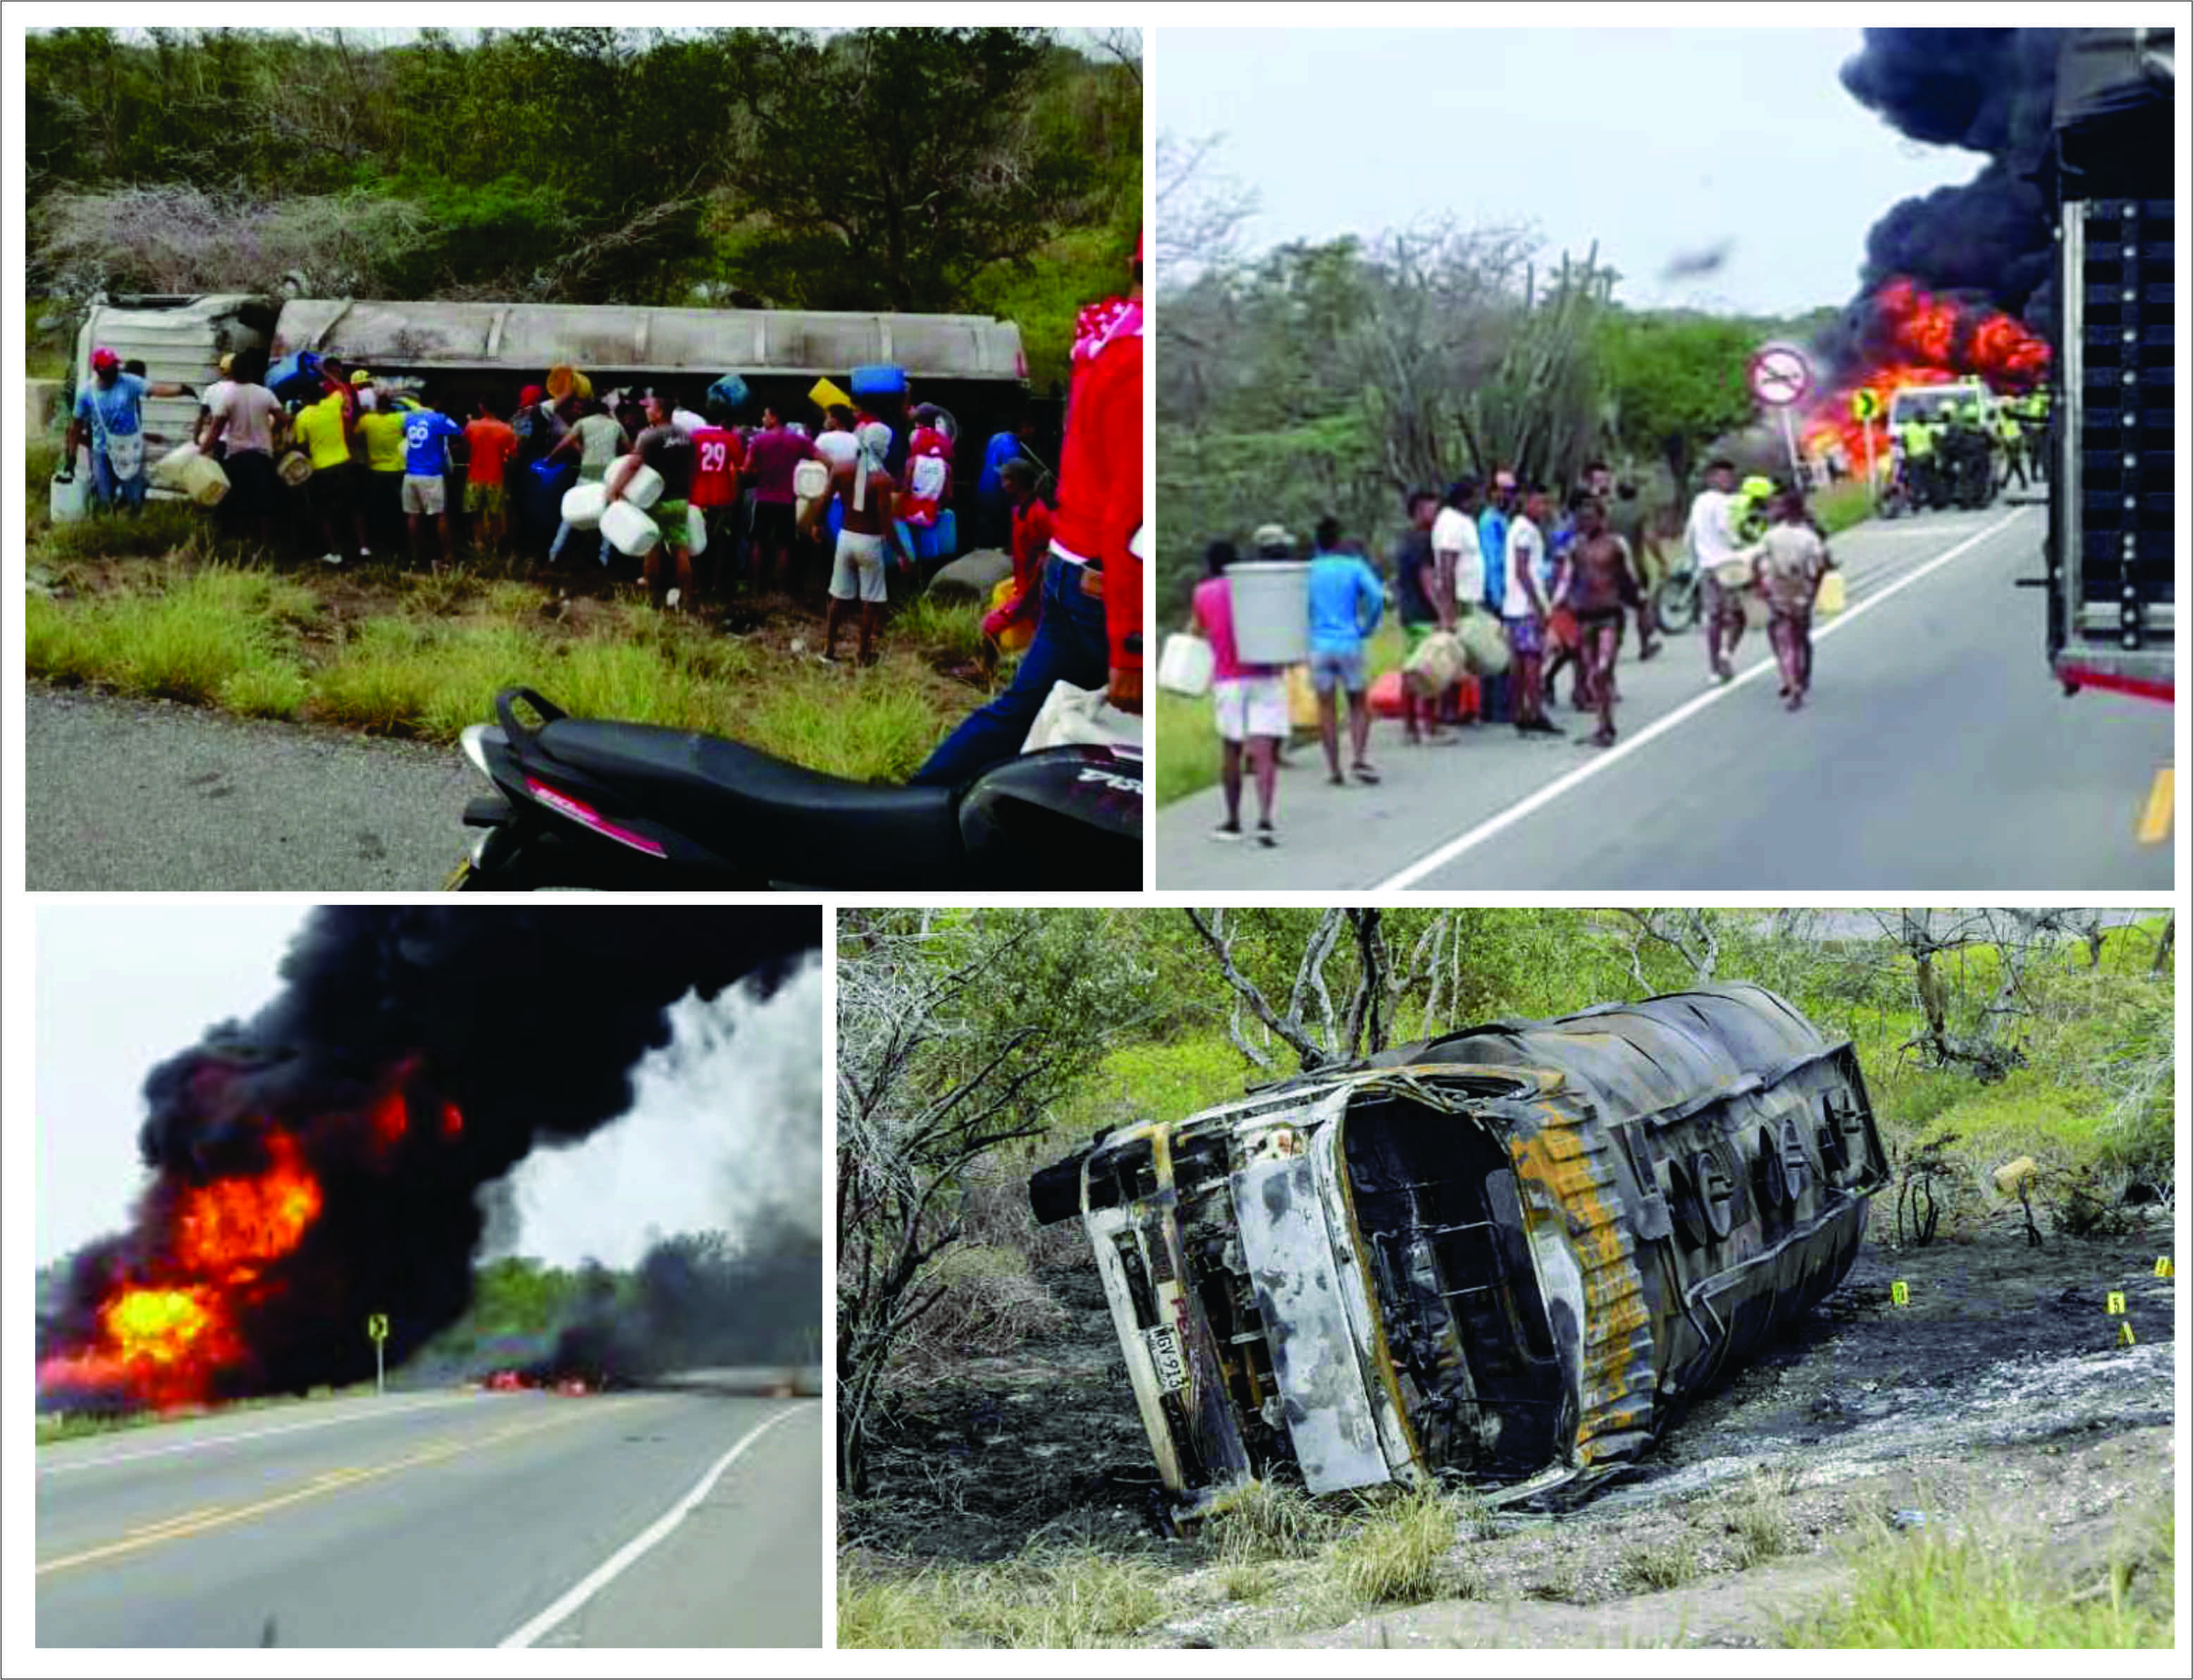 Tragedia en Colombia, camión cisterna con gasolina se volcó e incendió: 7 muertos 50 heridos